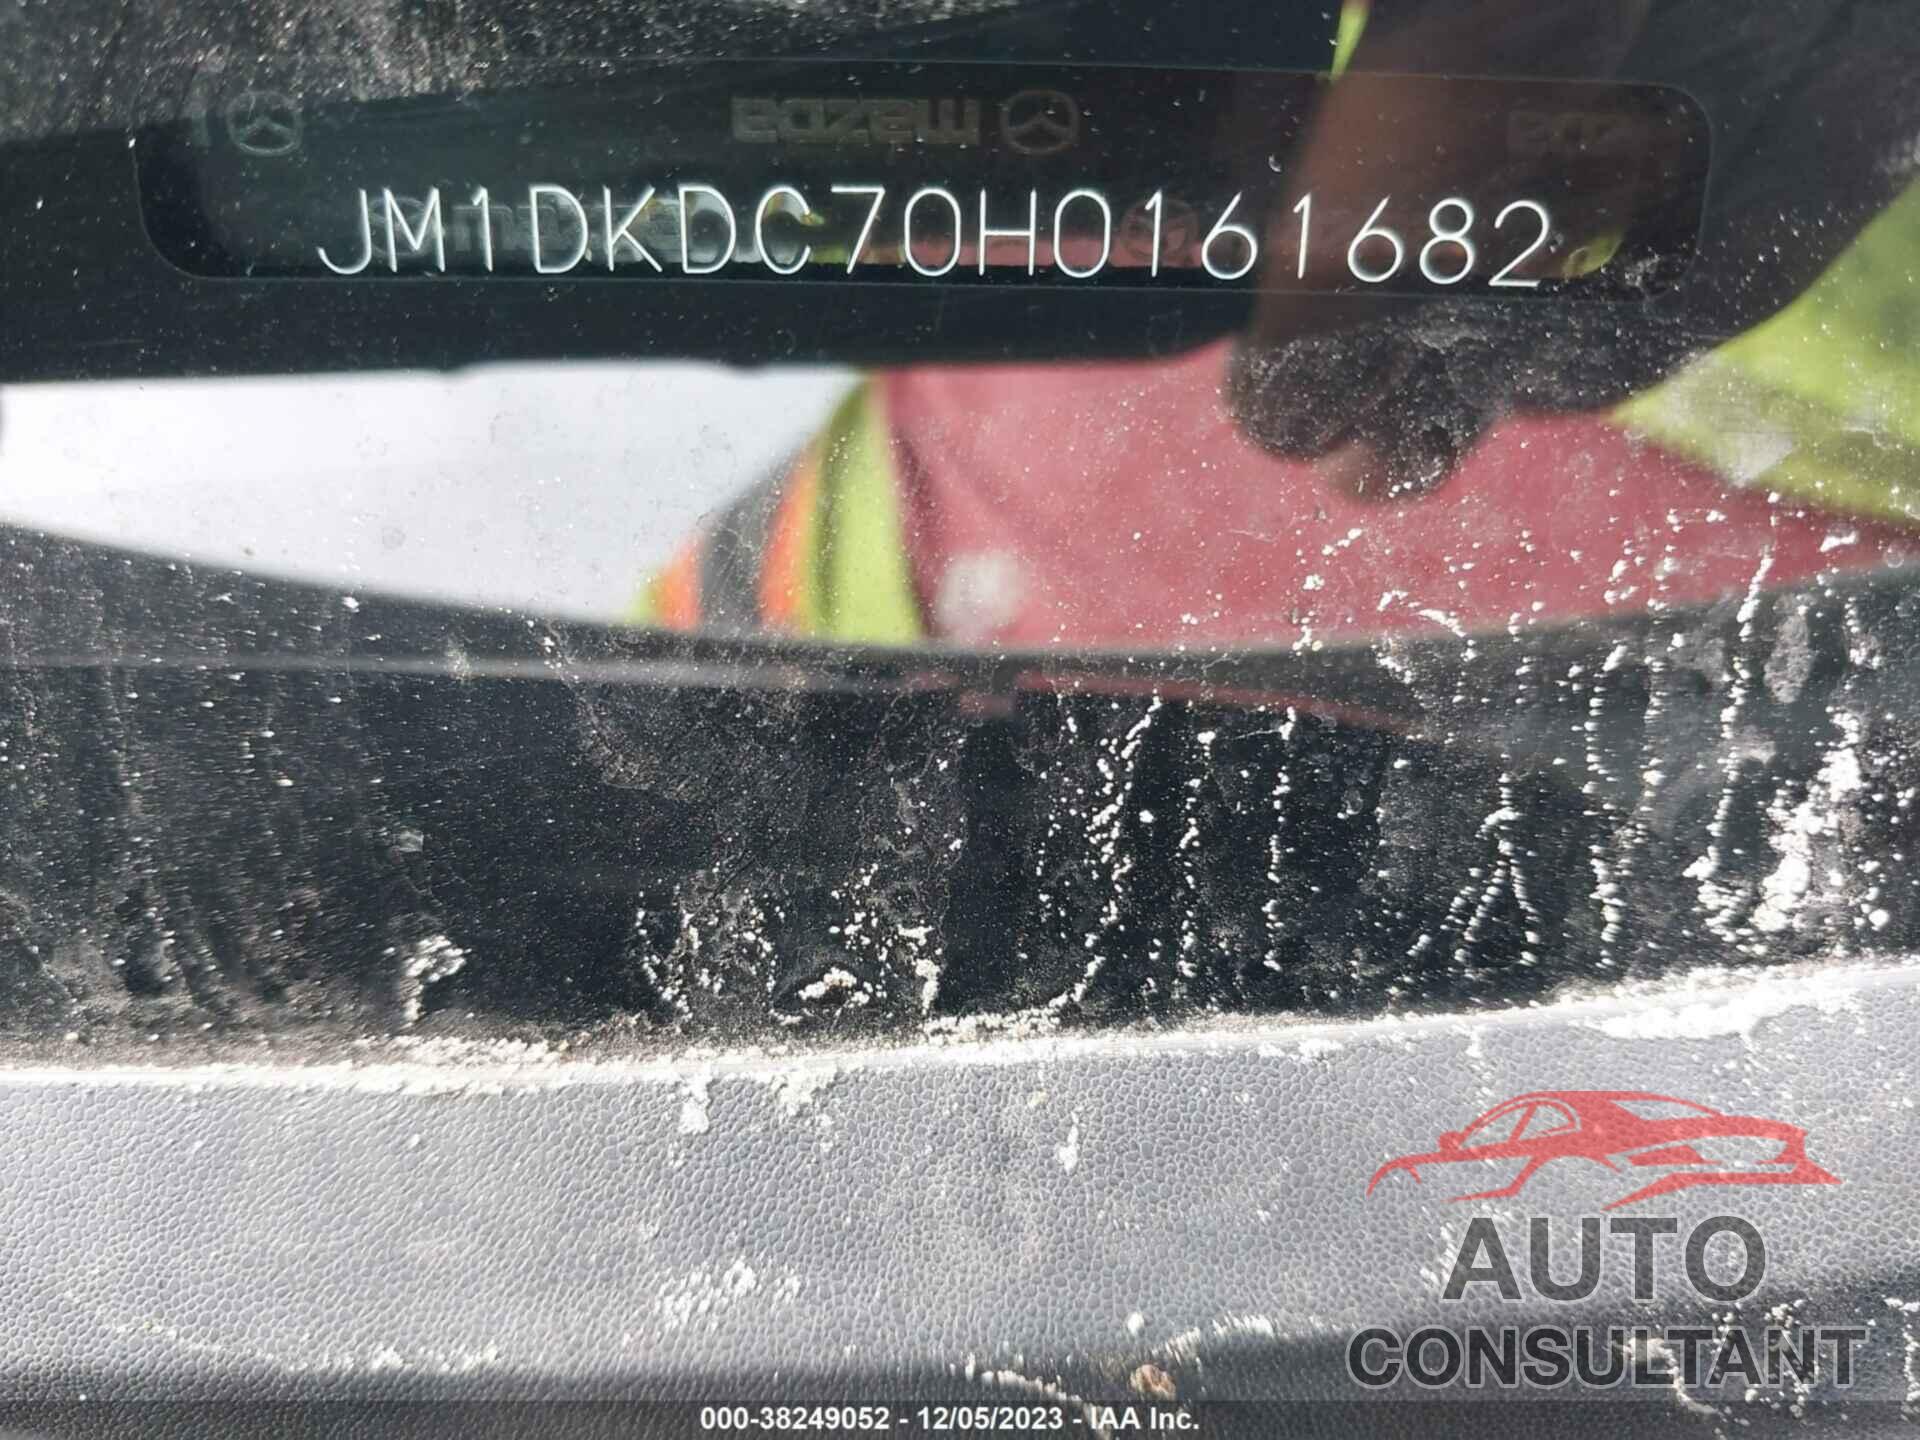 MAZDA CX-3 2017 - JM1DKDC70H0161682